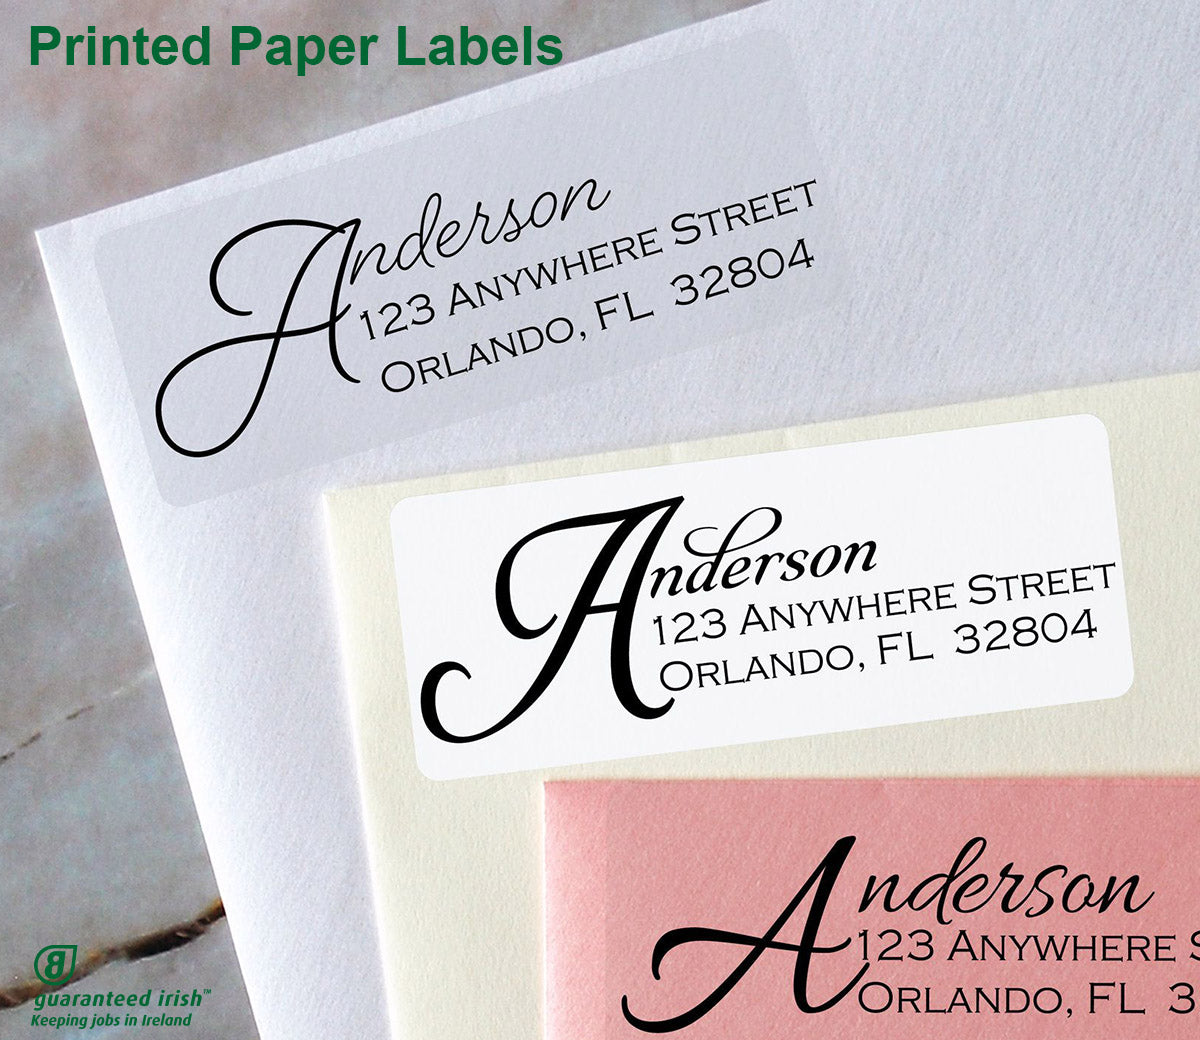 Printed Paper Labels